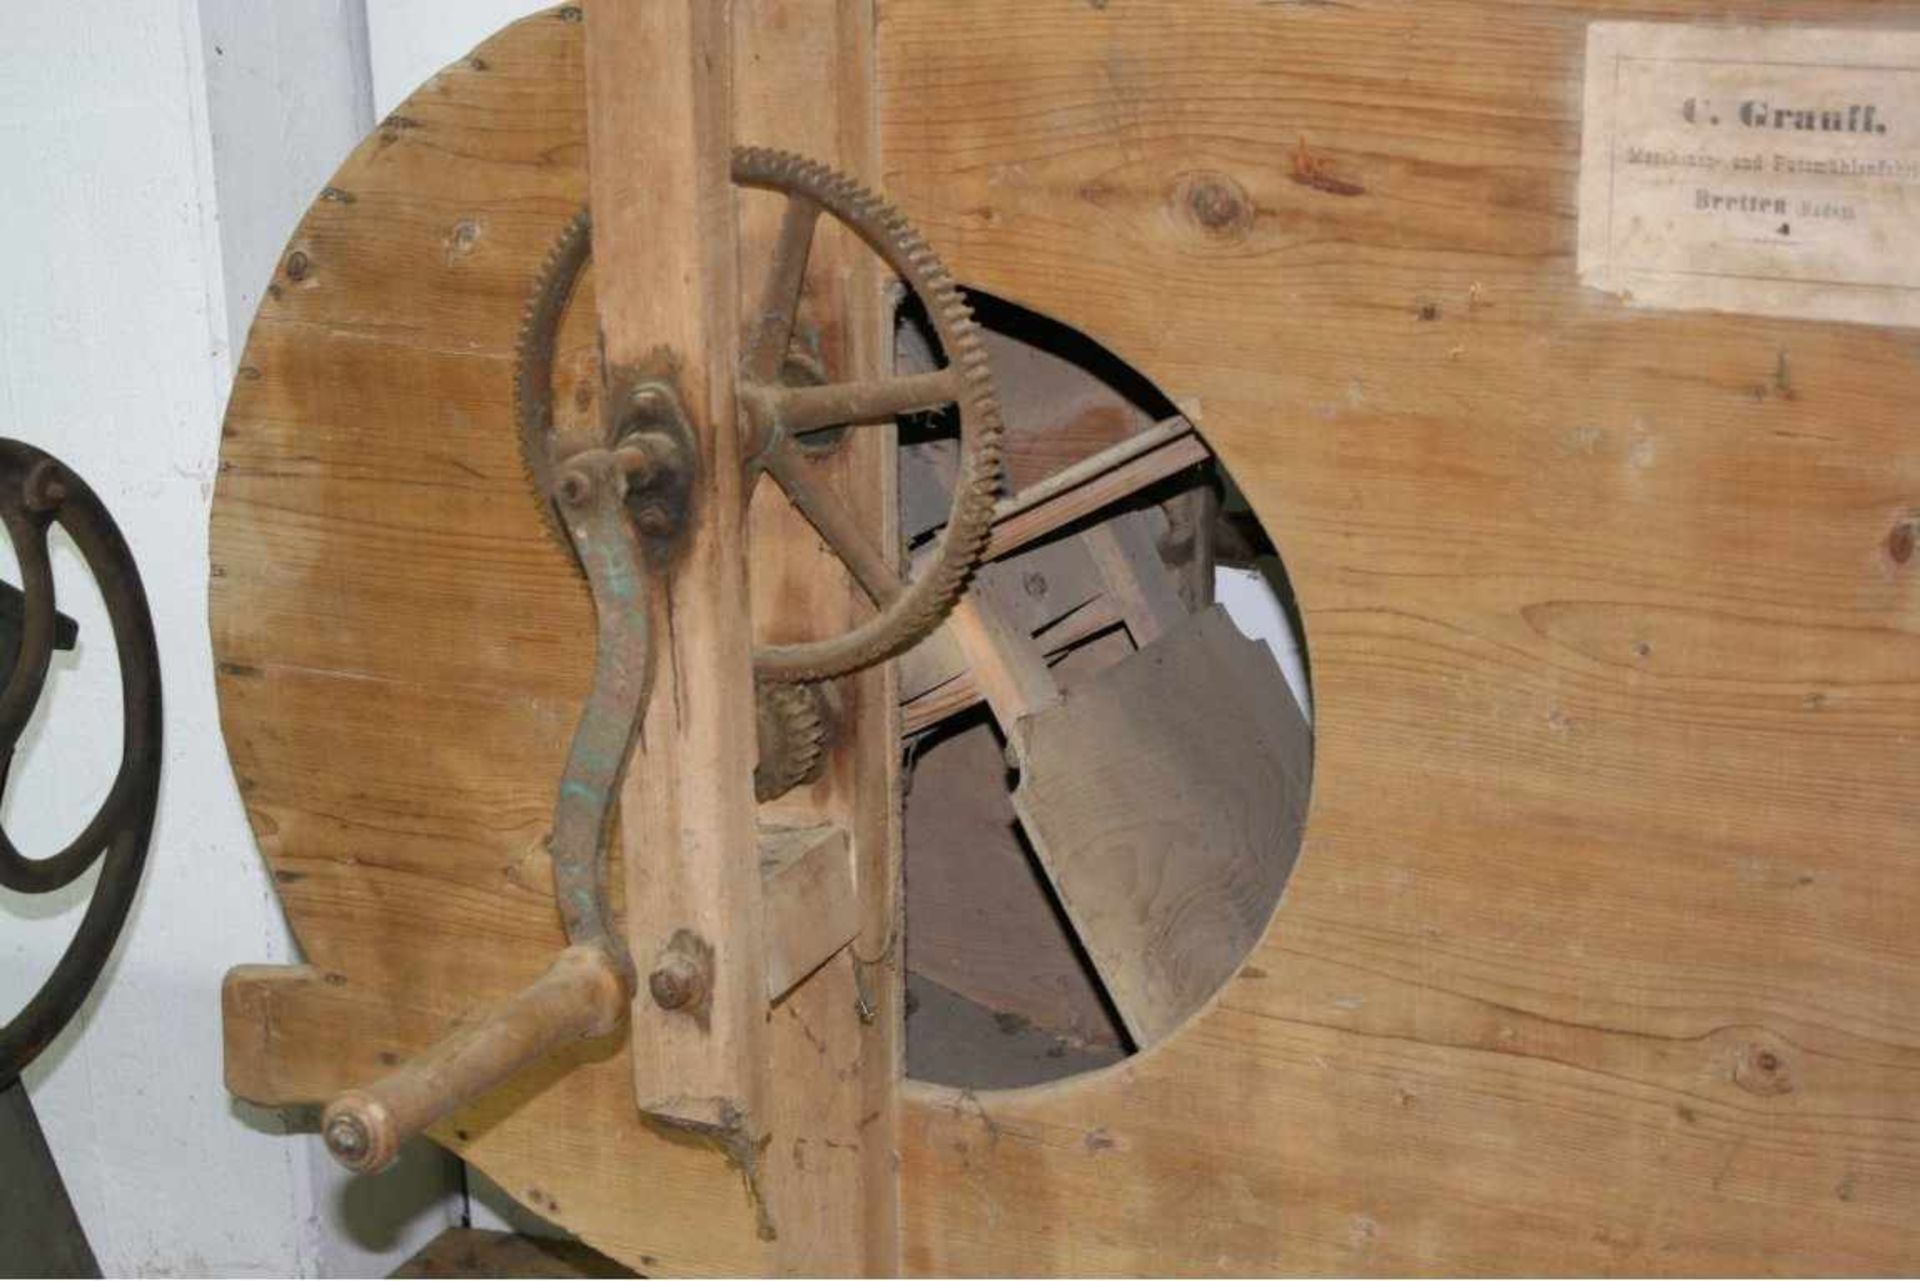 Landwirtschaftliche Maschine mit HolzgestellHerstellerbezeichnung C. Grauff Maschinen - Bild 3 aus 5